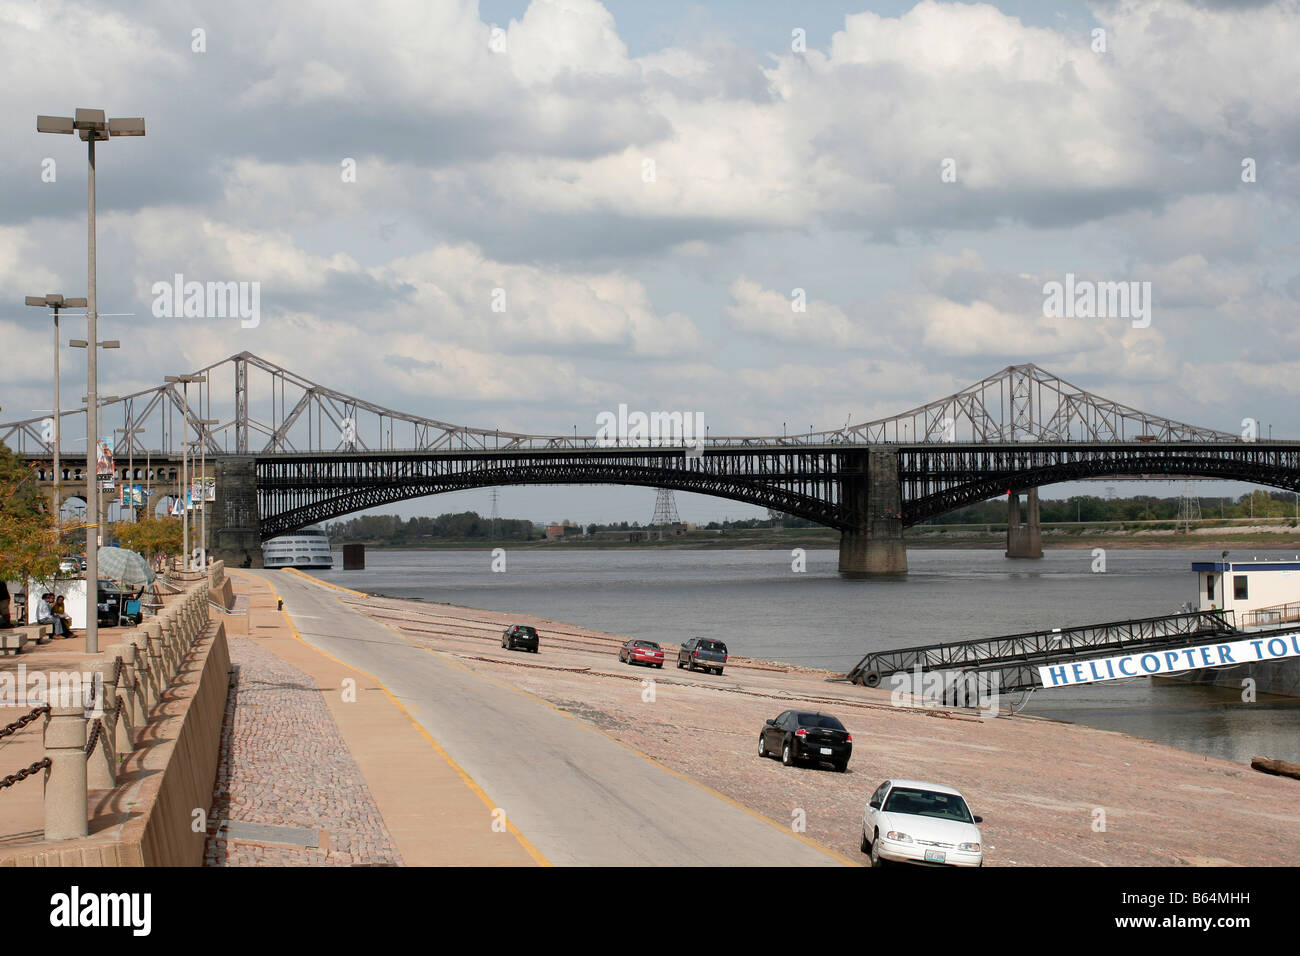 St. Louis am Wasser auf dem Mississippi River mit Blick auf Eads Brücke Stockfoto